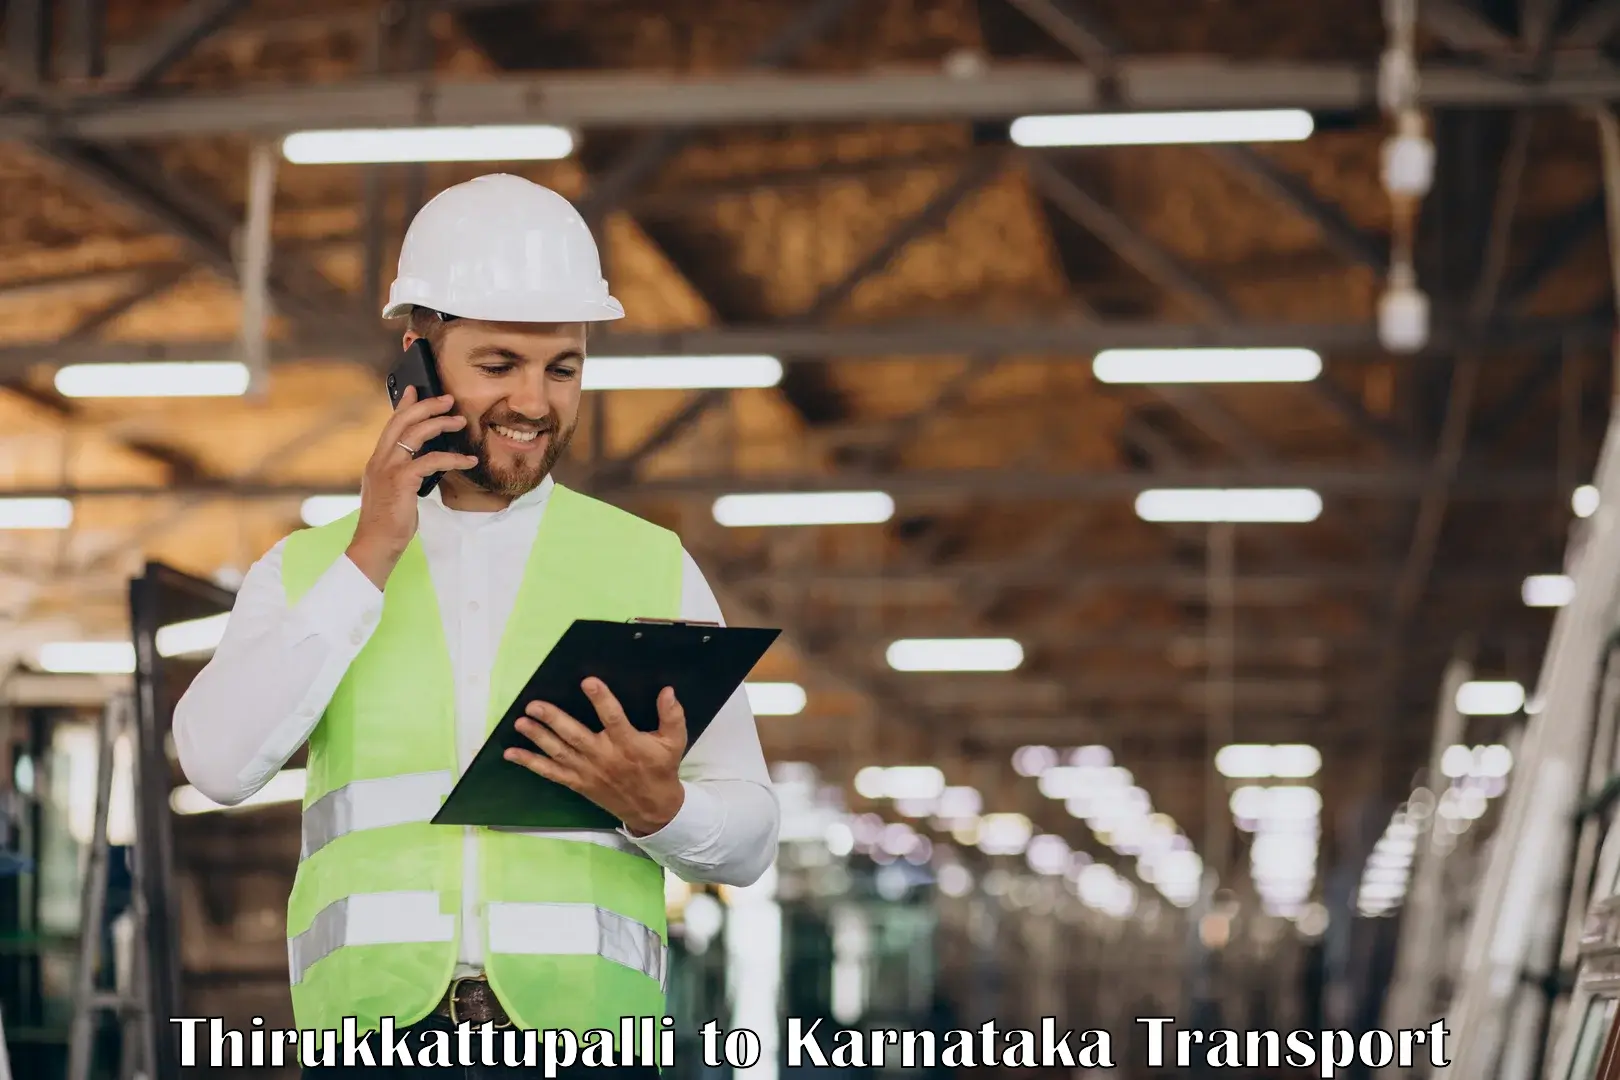 Nearest transport service Thirukkattupalli to Jagalur